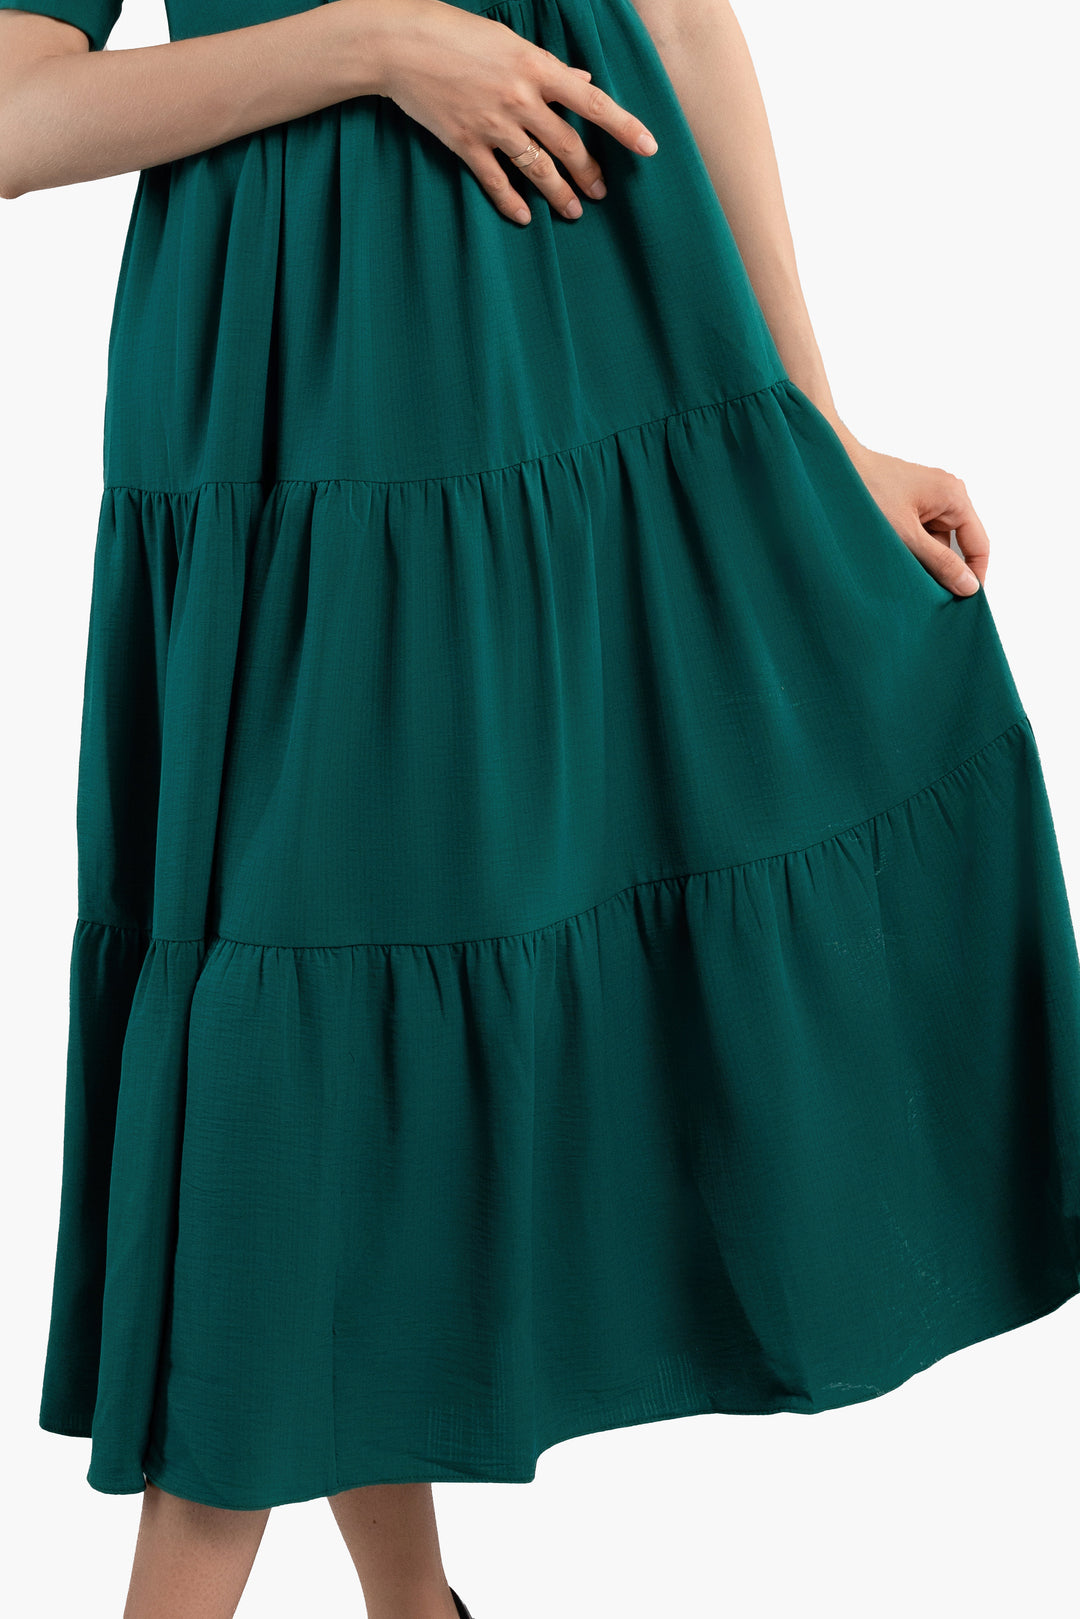 Midi Trends Woman Dress-Green